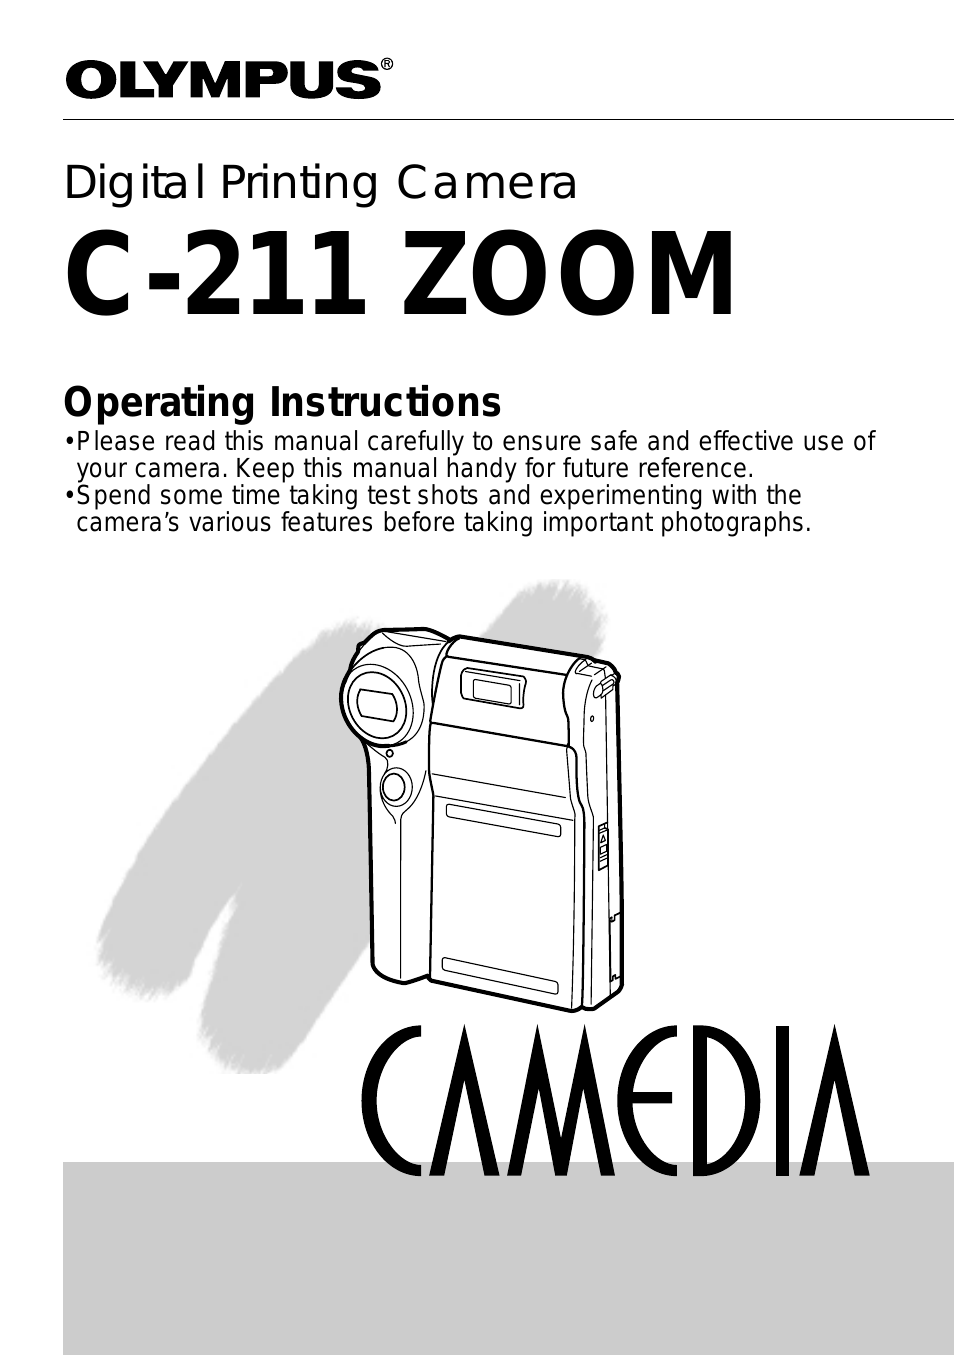 C-211